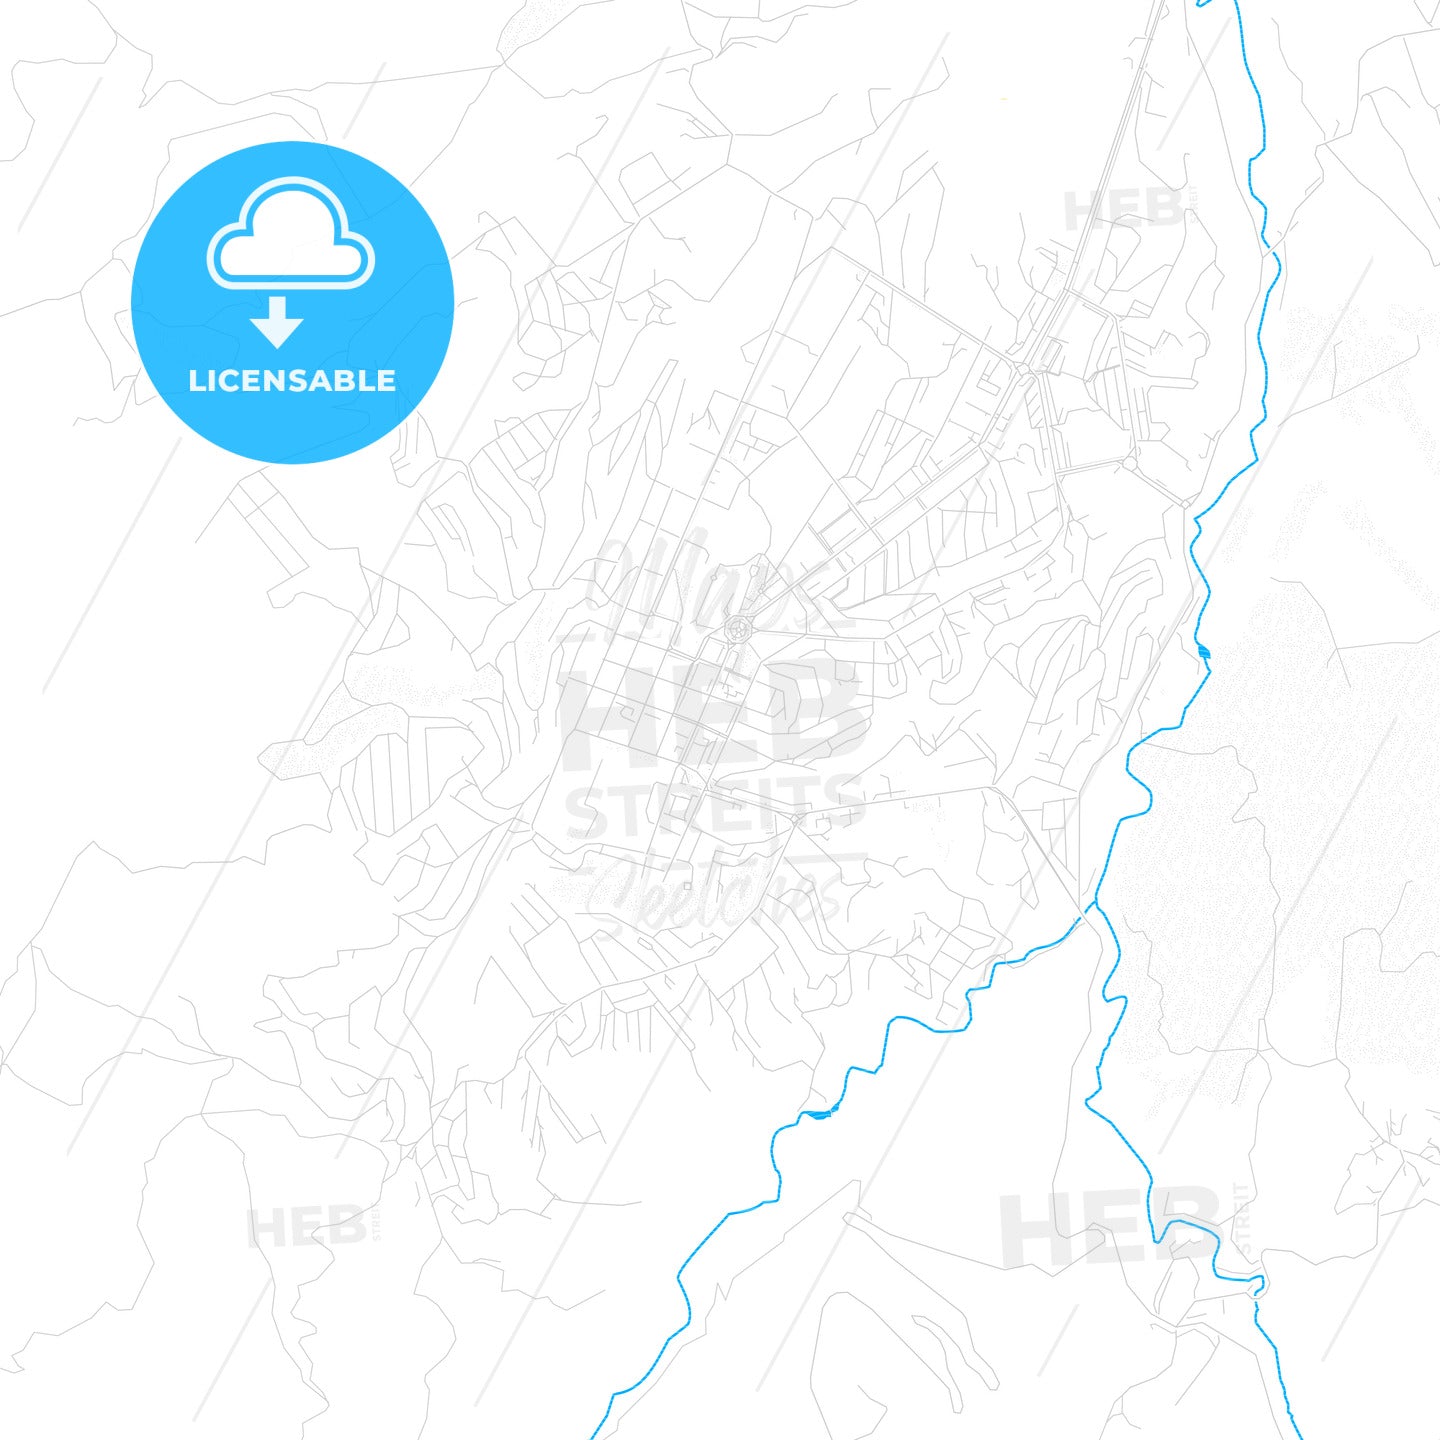 Khankendi, Azerbaijan PDF vector map with water in focus